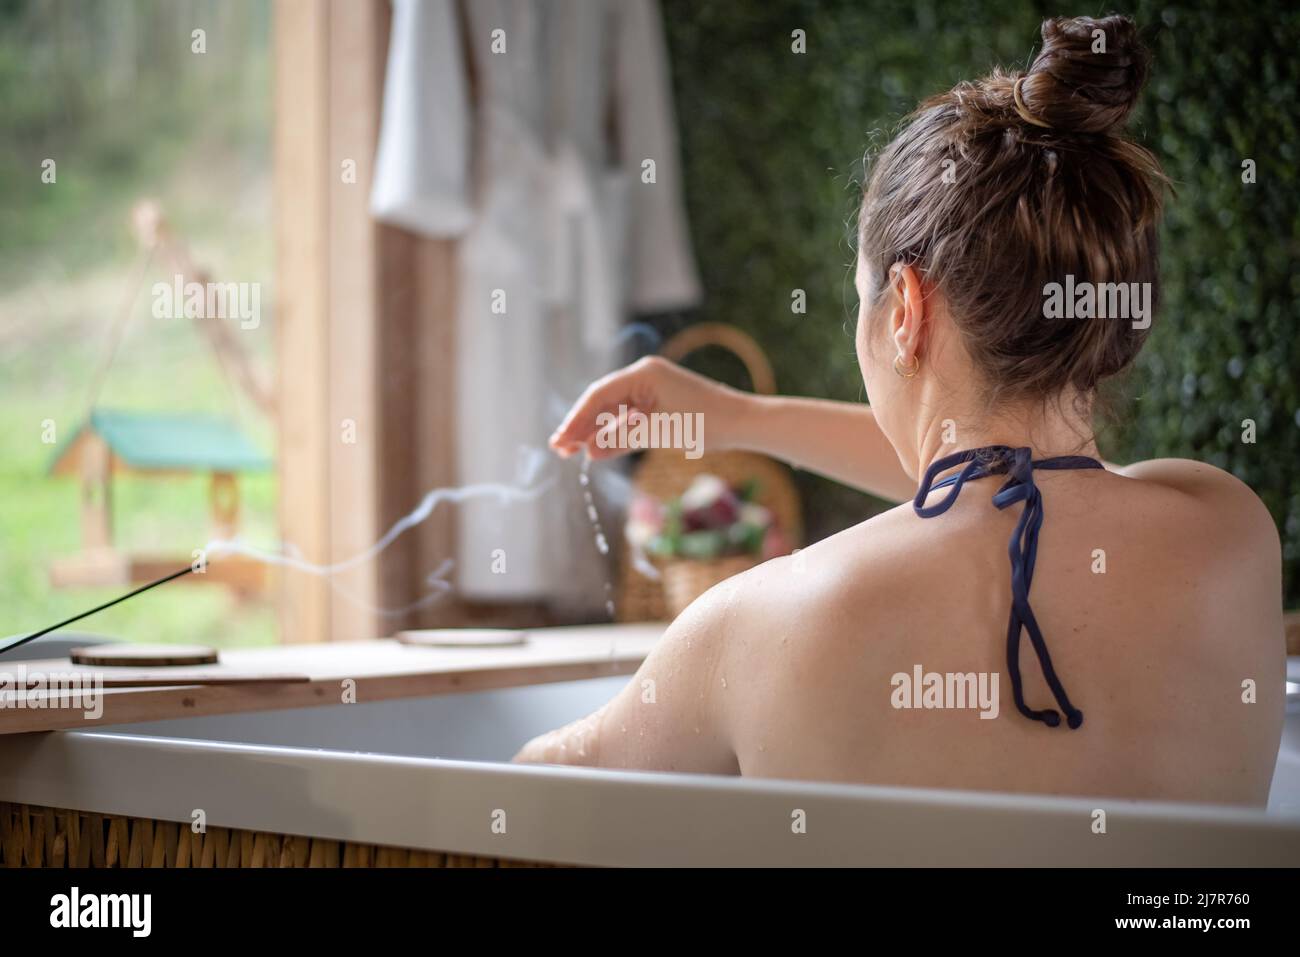 donna nella vasca idromassaggio che versa l'acqua su se stessa Foto Stock